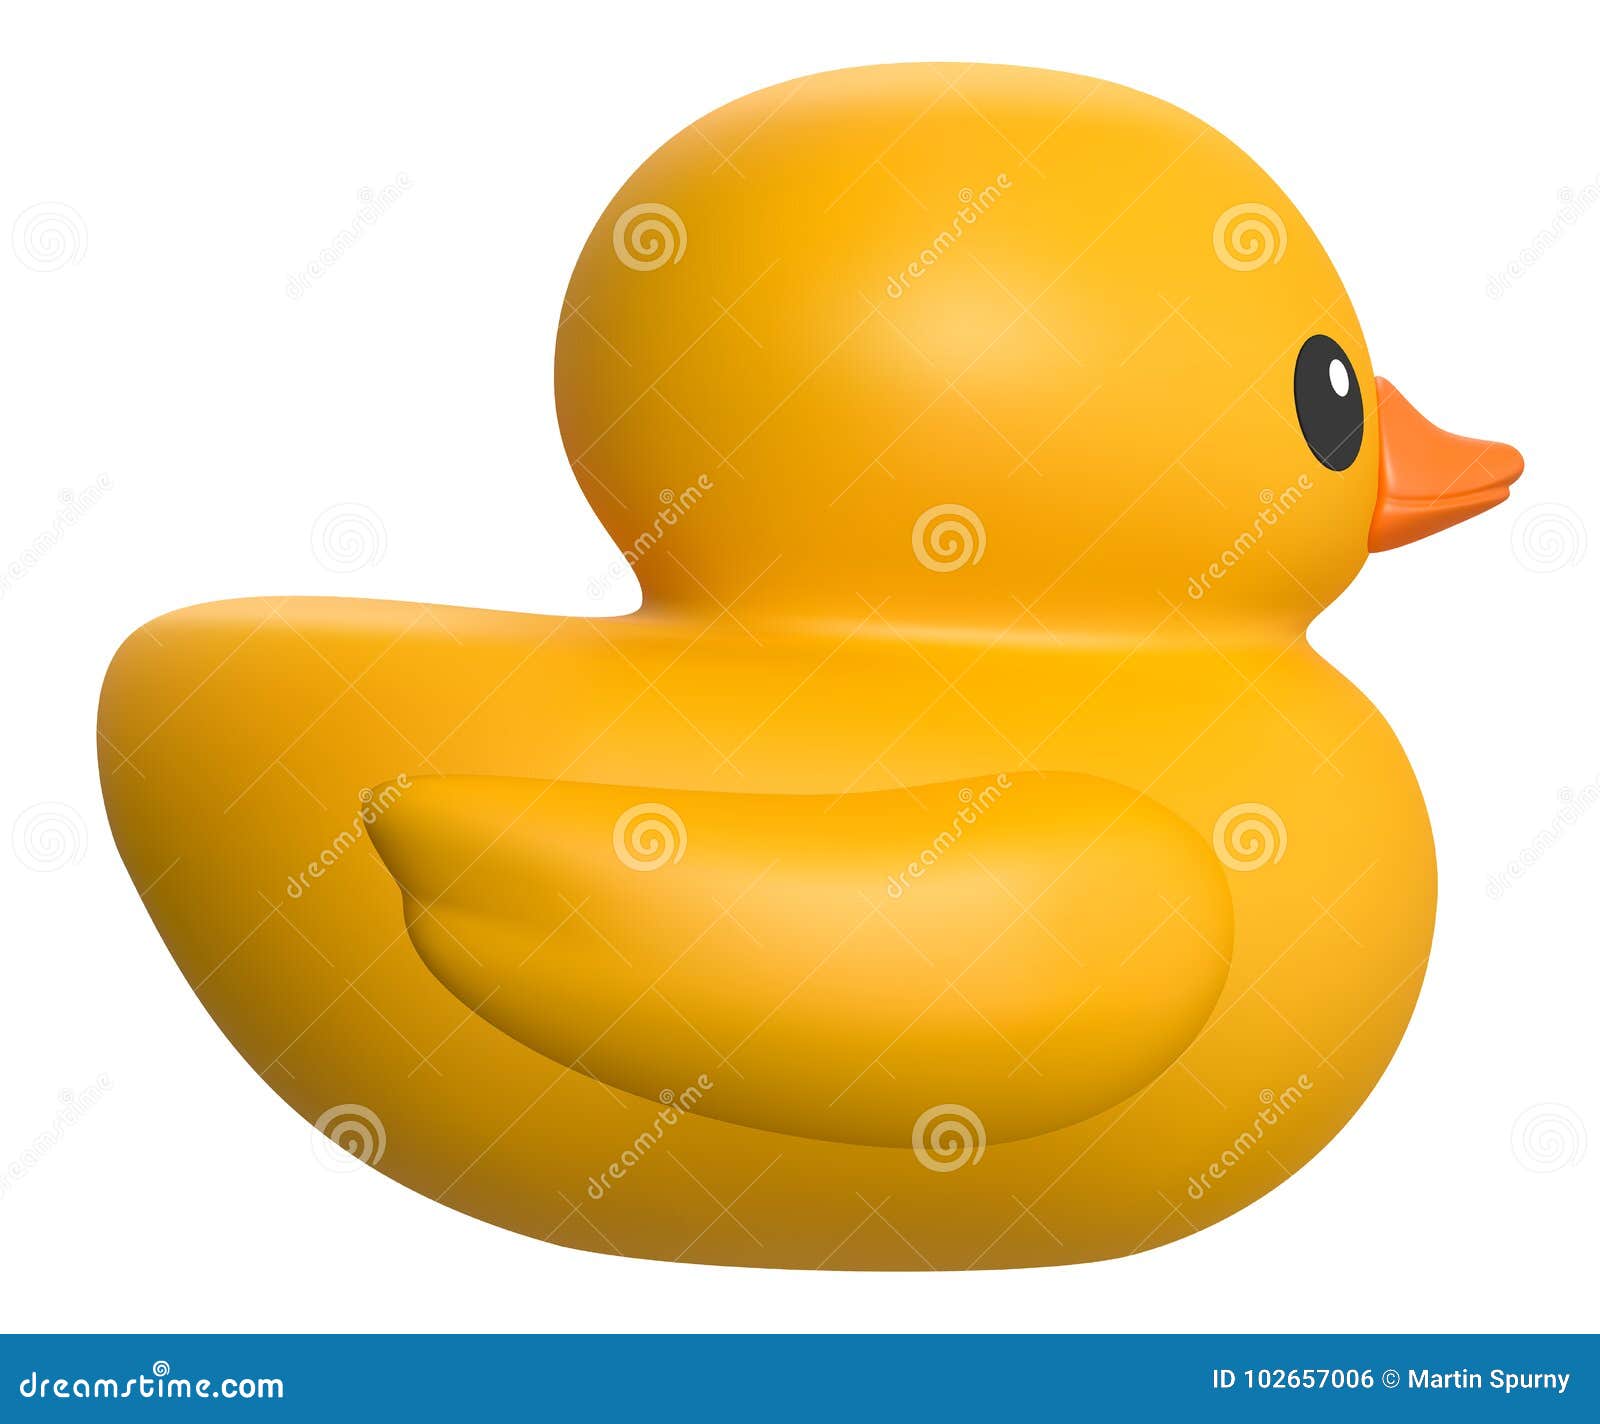 Rubber Duck 3d Model Free